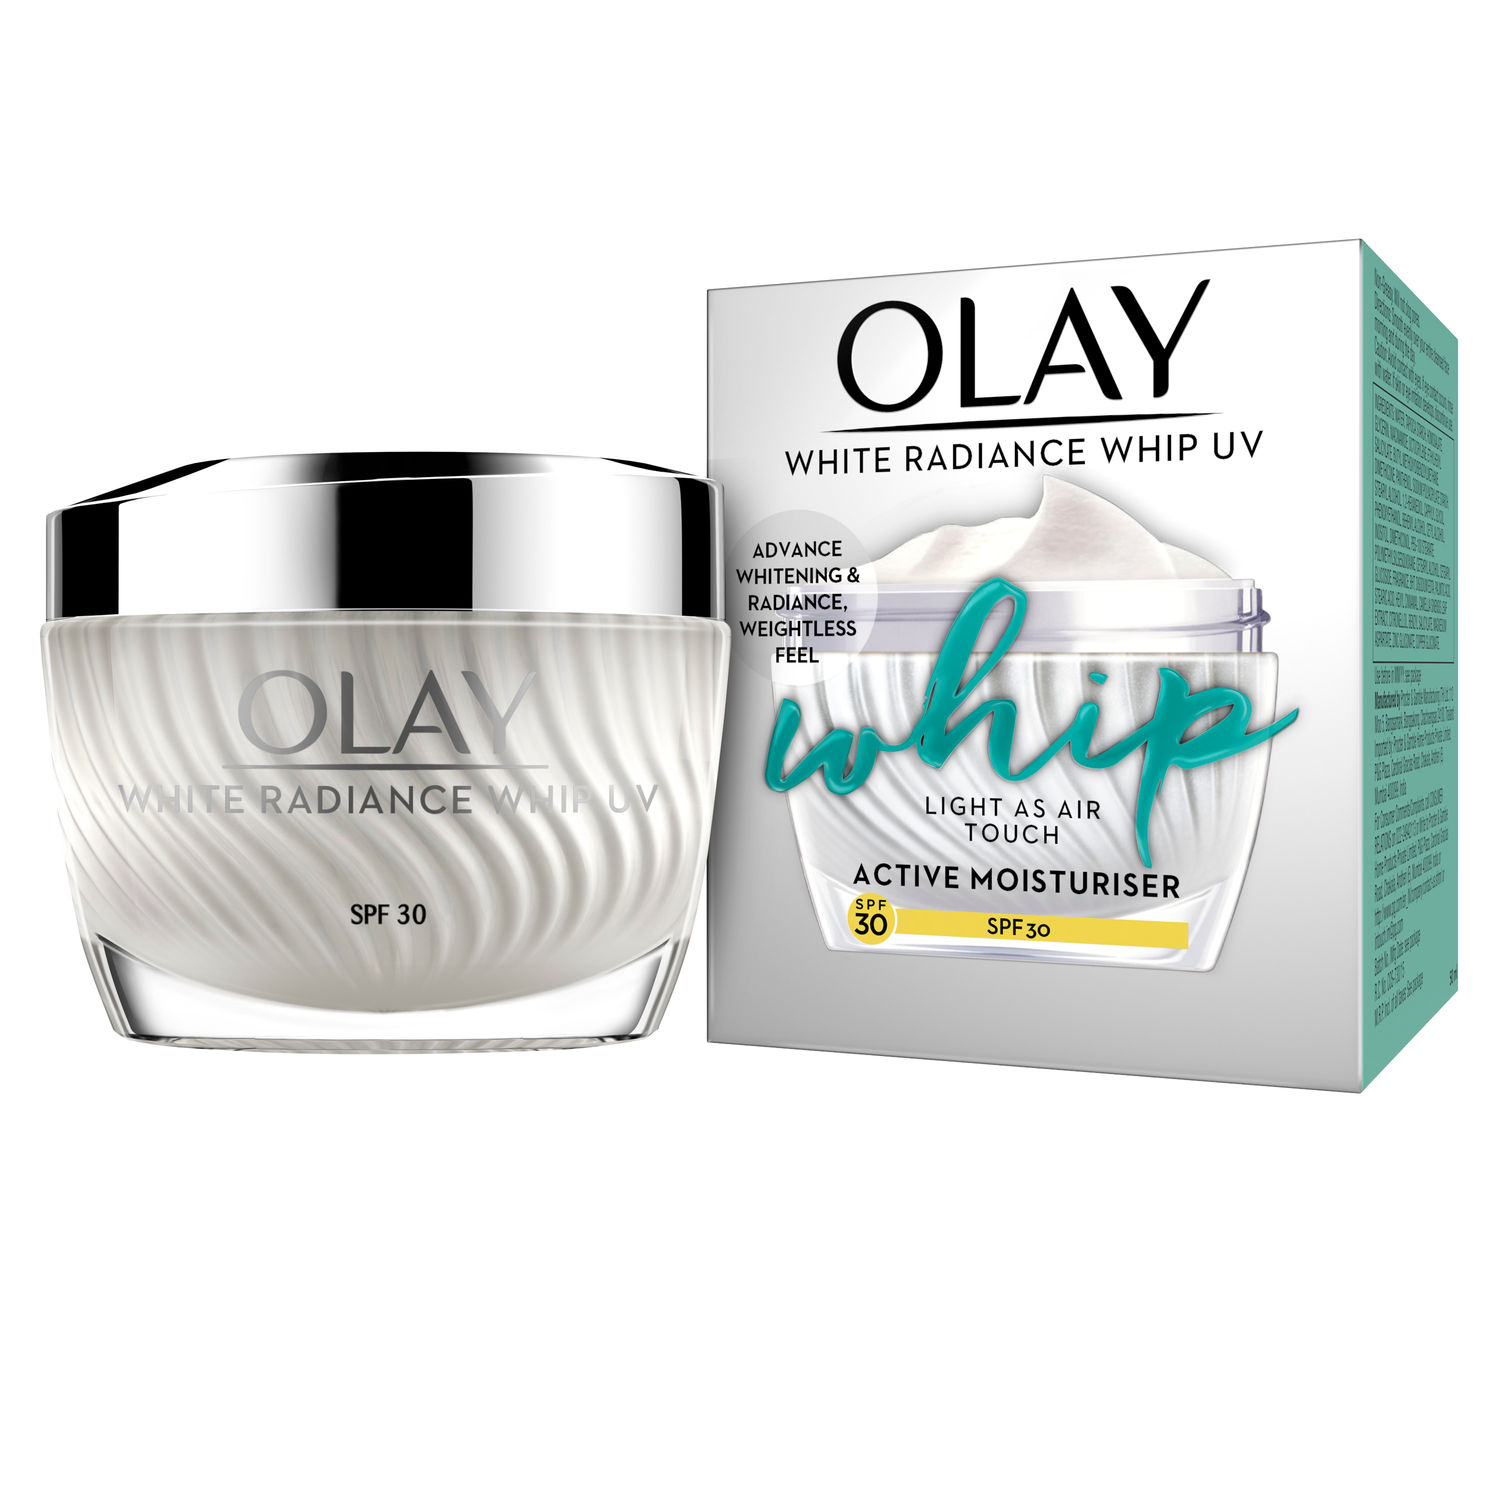 Buy Olay White Radiance Whip UV SPF 30 - Purplle